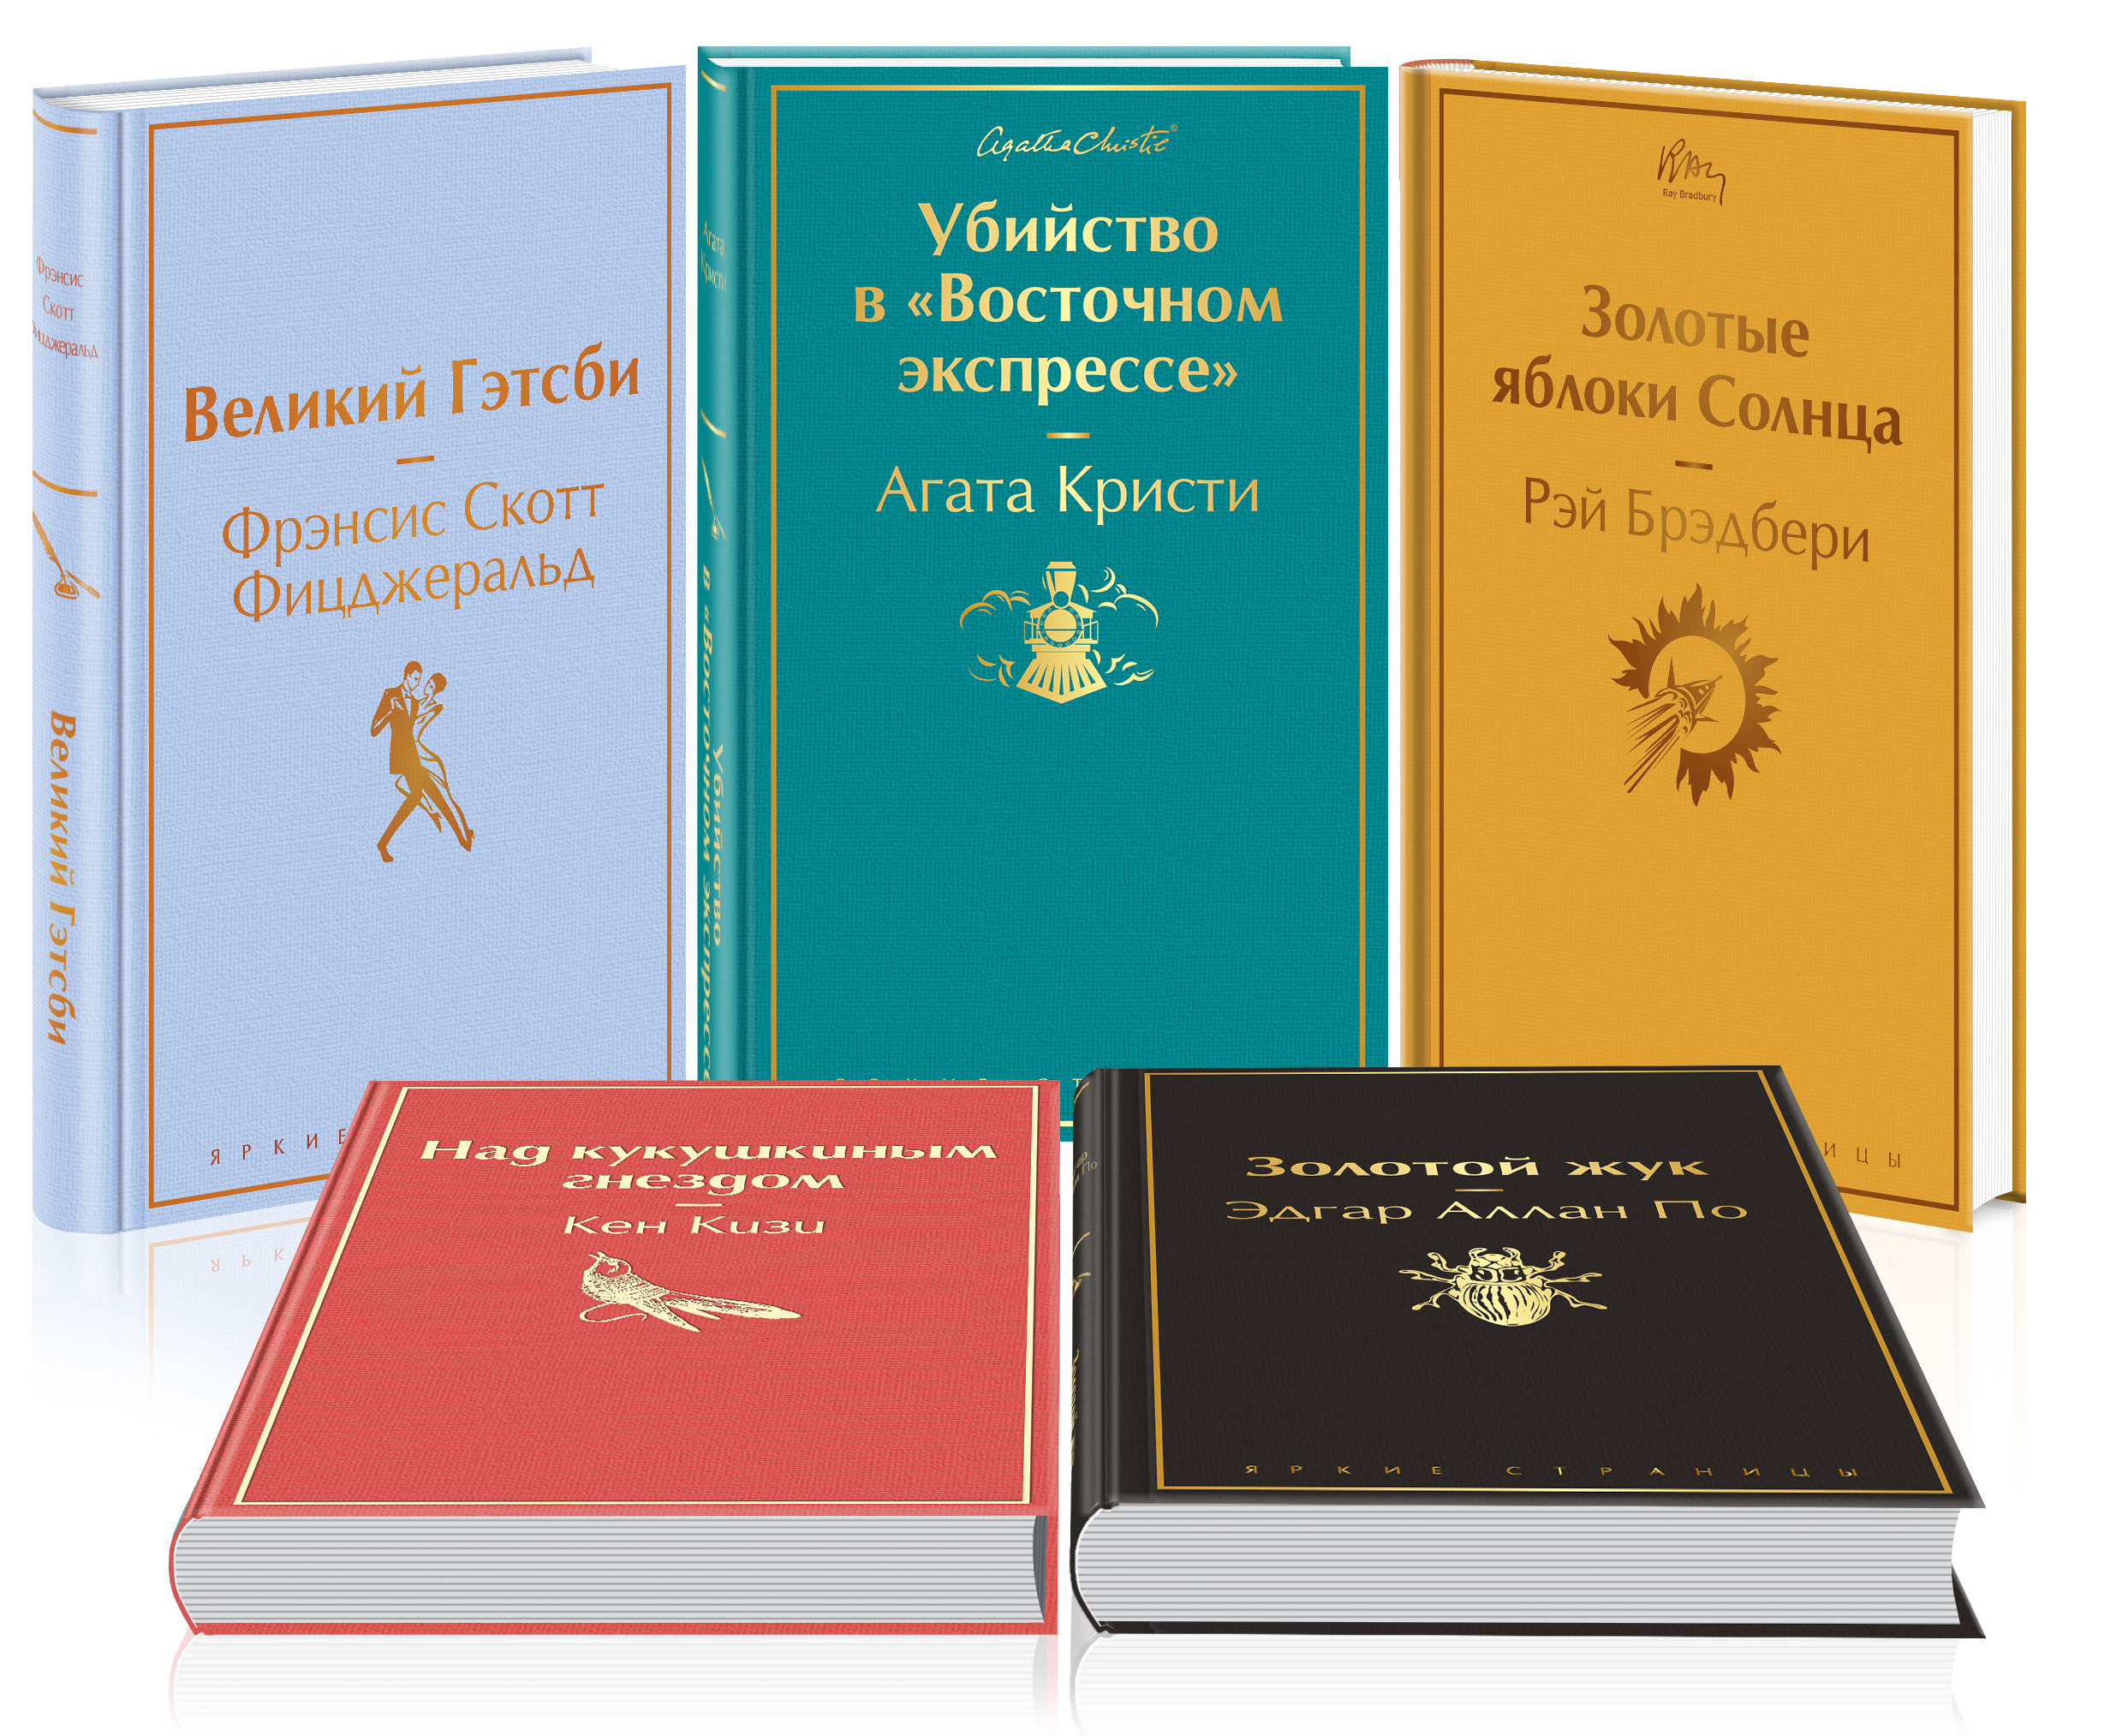 Кейс настоящего мужчины (комплект из 5 книг: Великий Гэтсби, Над кукушкиным гнездом, Золотой жук и др)